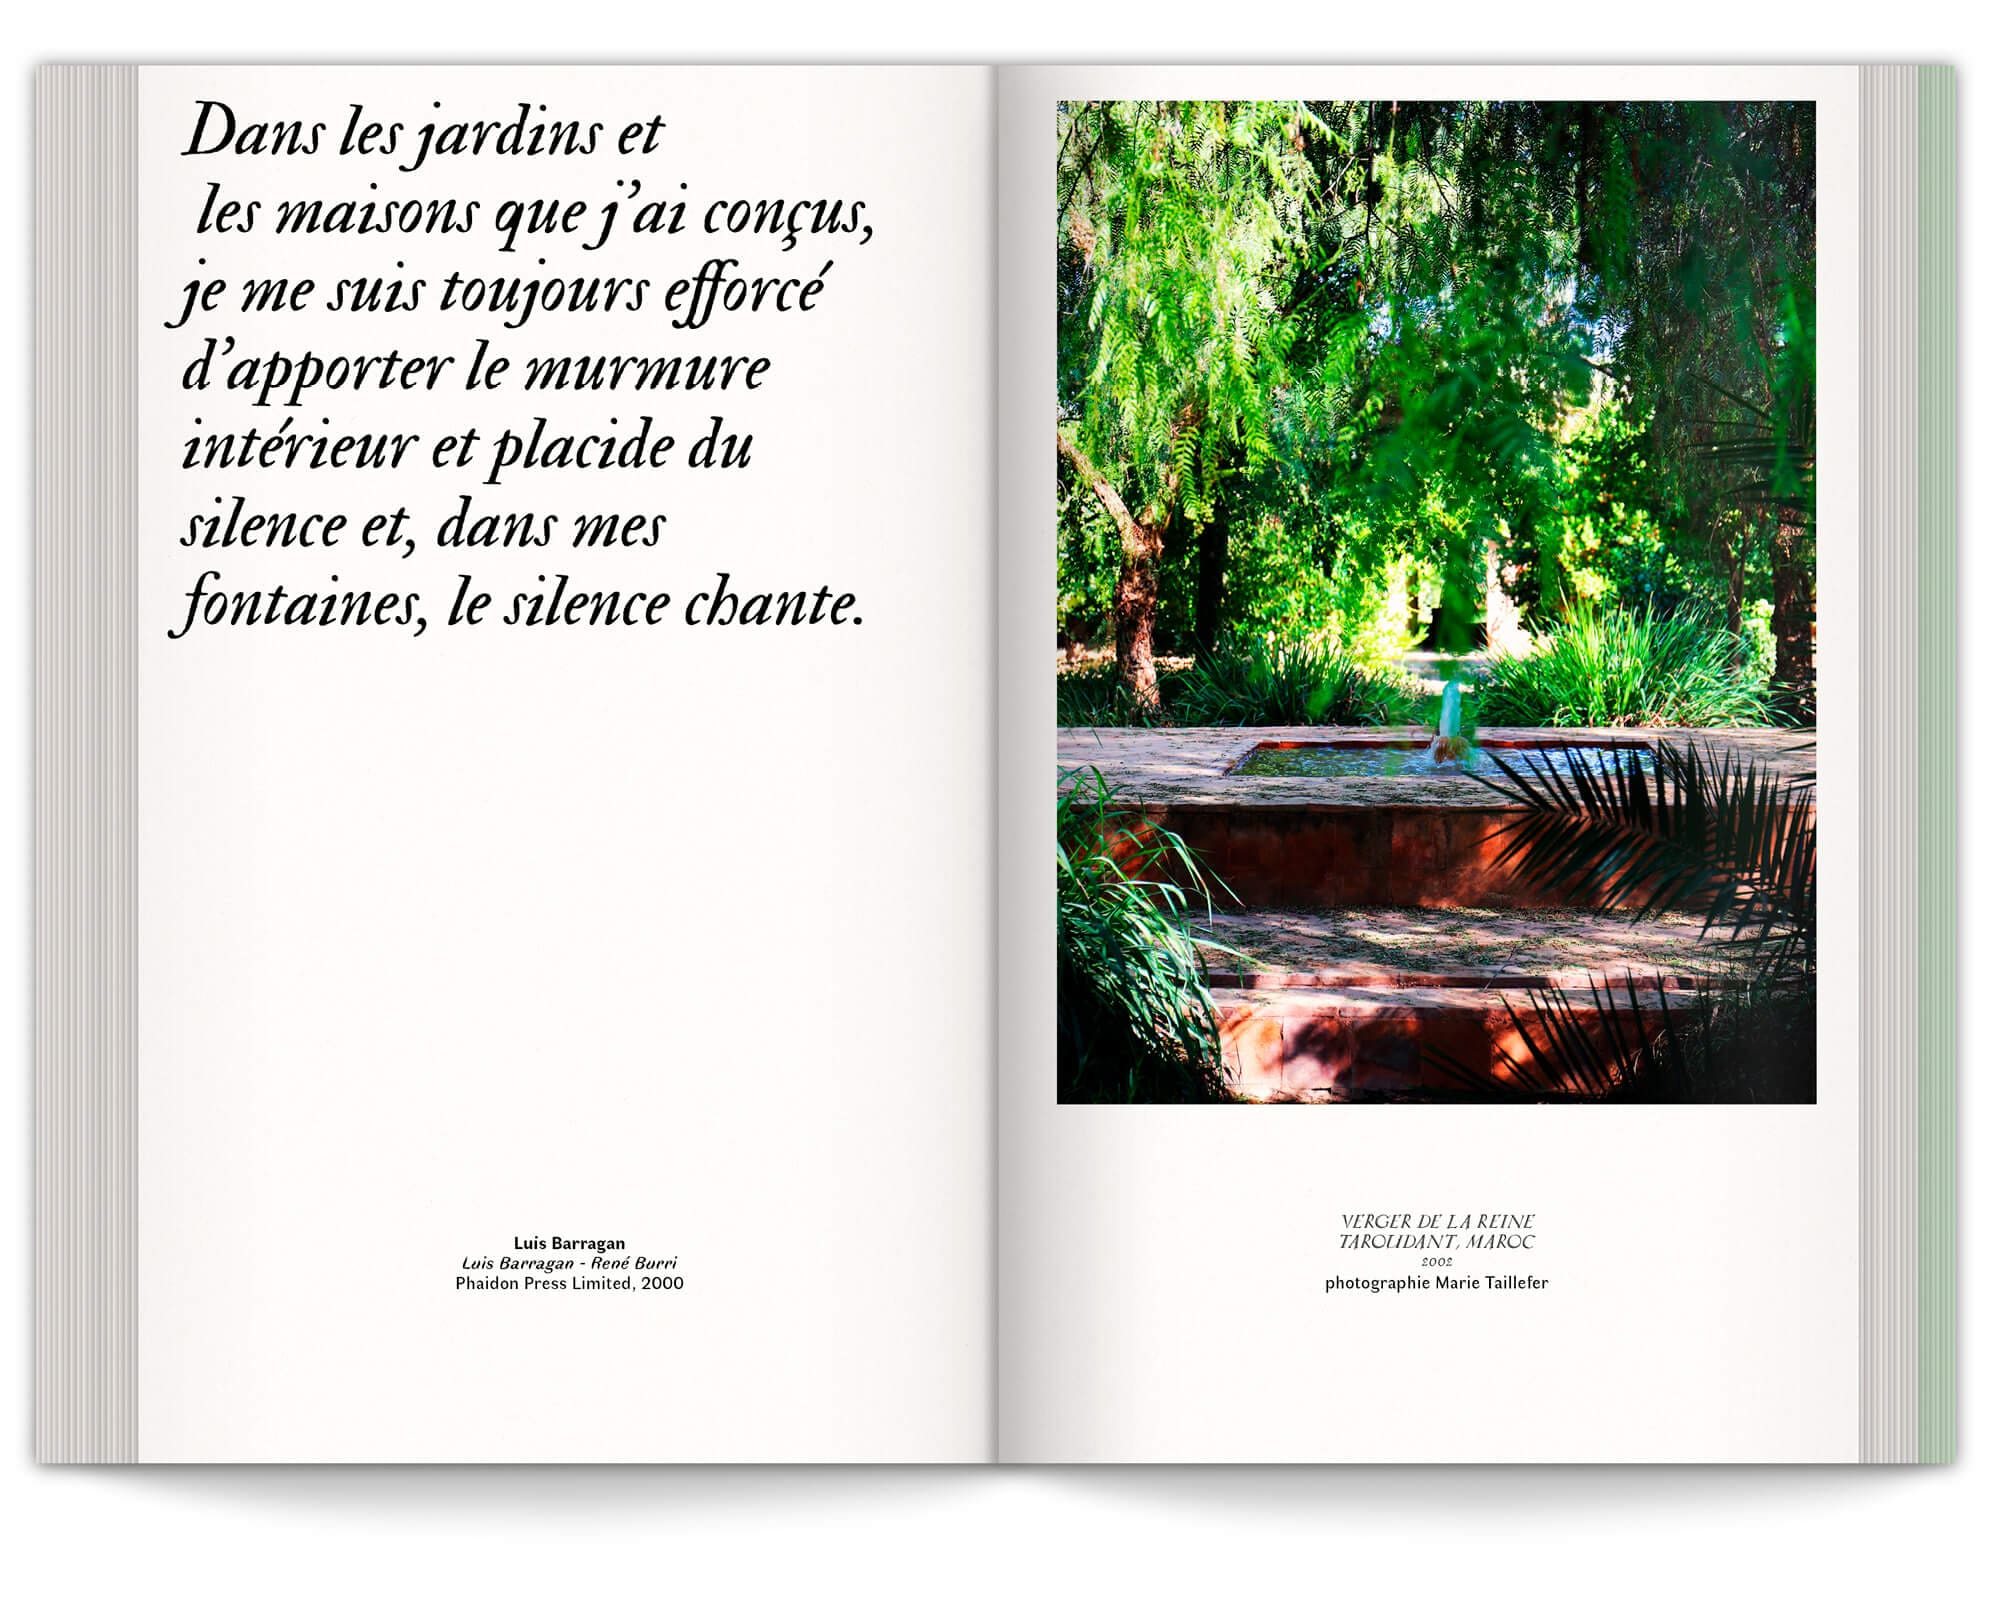 Citations et photographique rythme le manifeste du jardin émotionnel, design graphique IchetKar